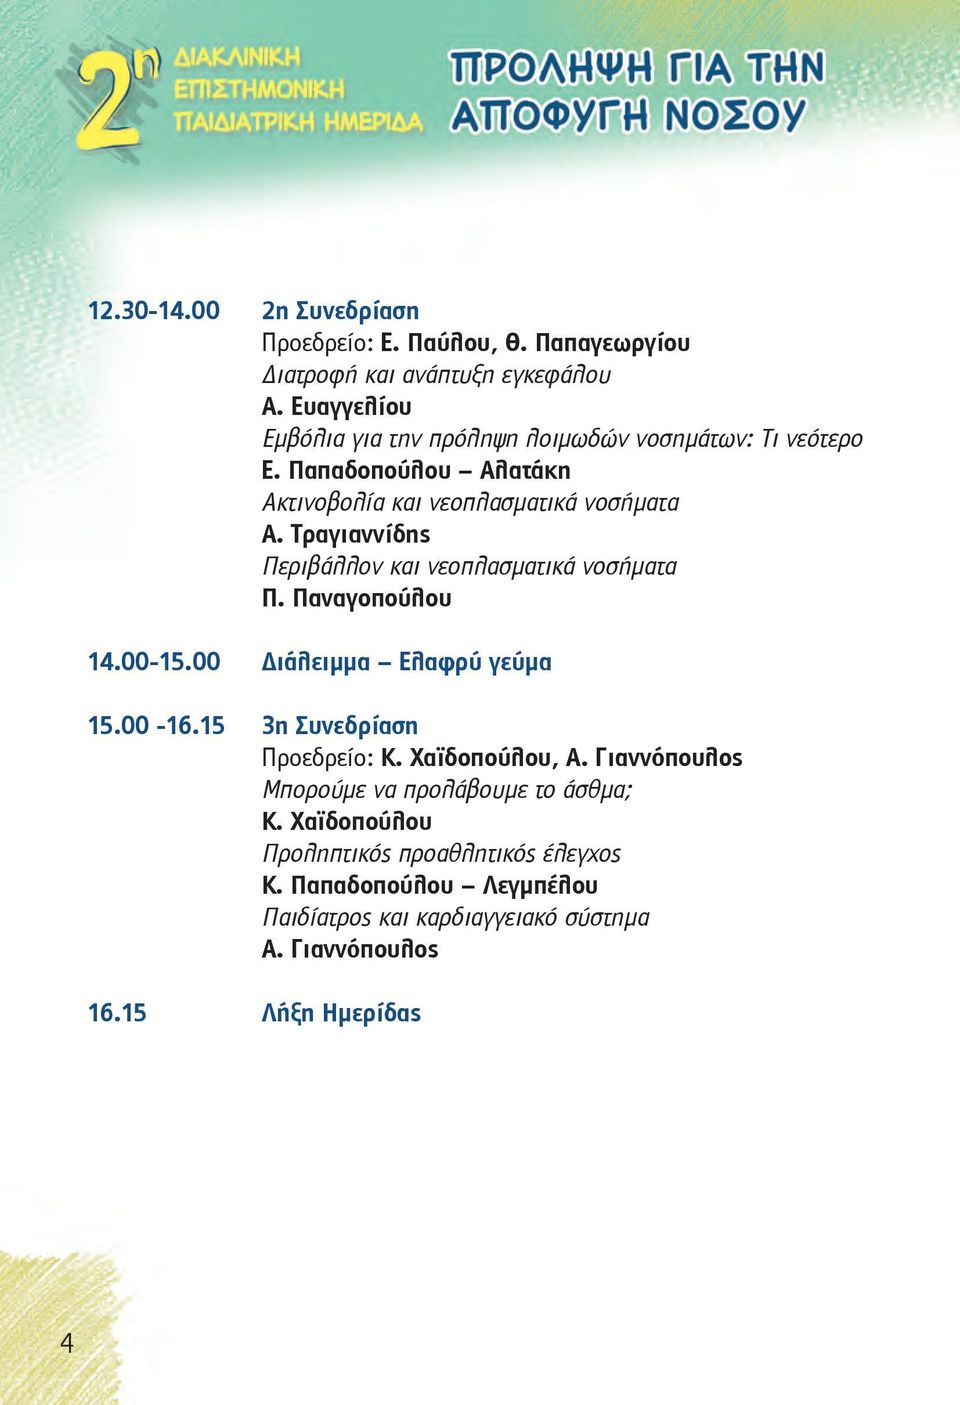 Τραγιαννίδης Περιβάλλον και νεοπλασματικά νοσήματα Π. Παναγοπούλου 14.00-15.00 Διάλειμμα Ελαφρύ γεύμα 15.00-16.15 3η Συνεδρίαση Προεδρείο: Κ.